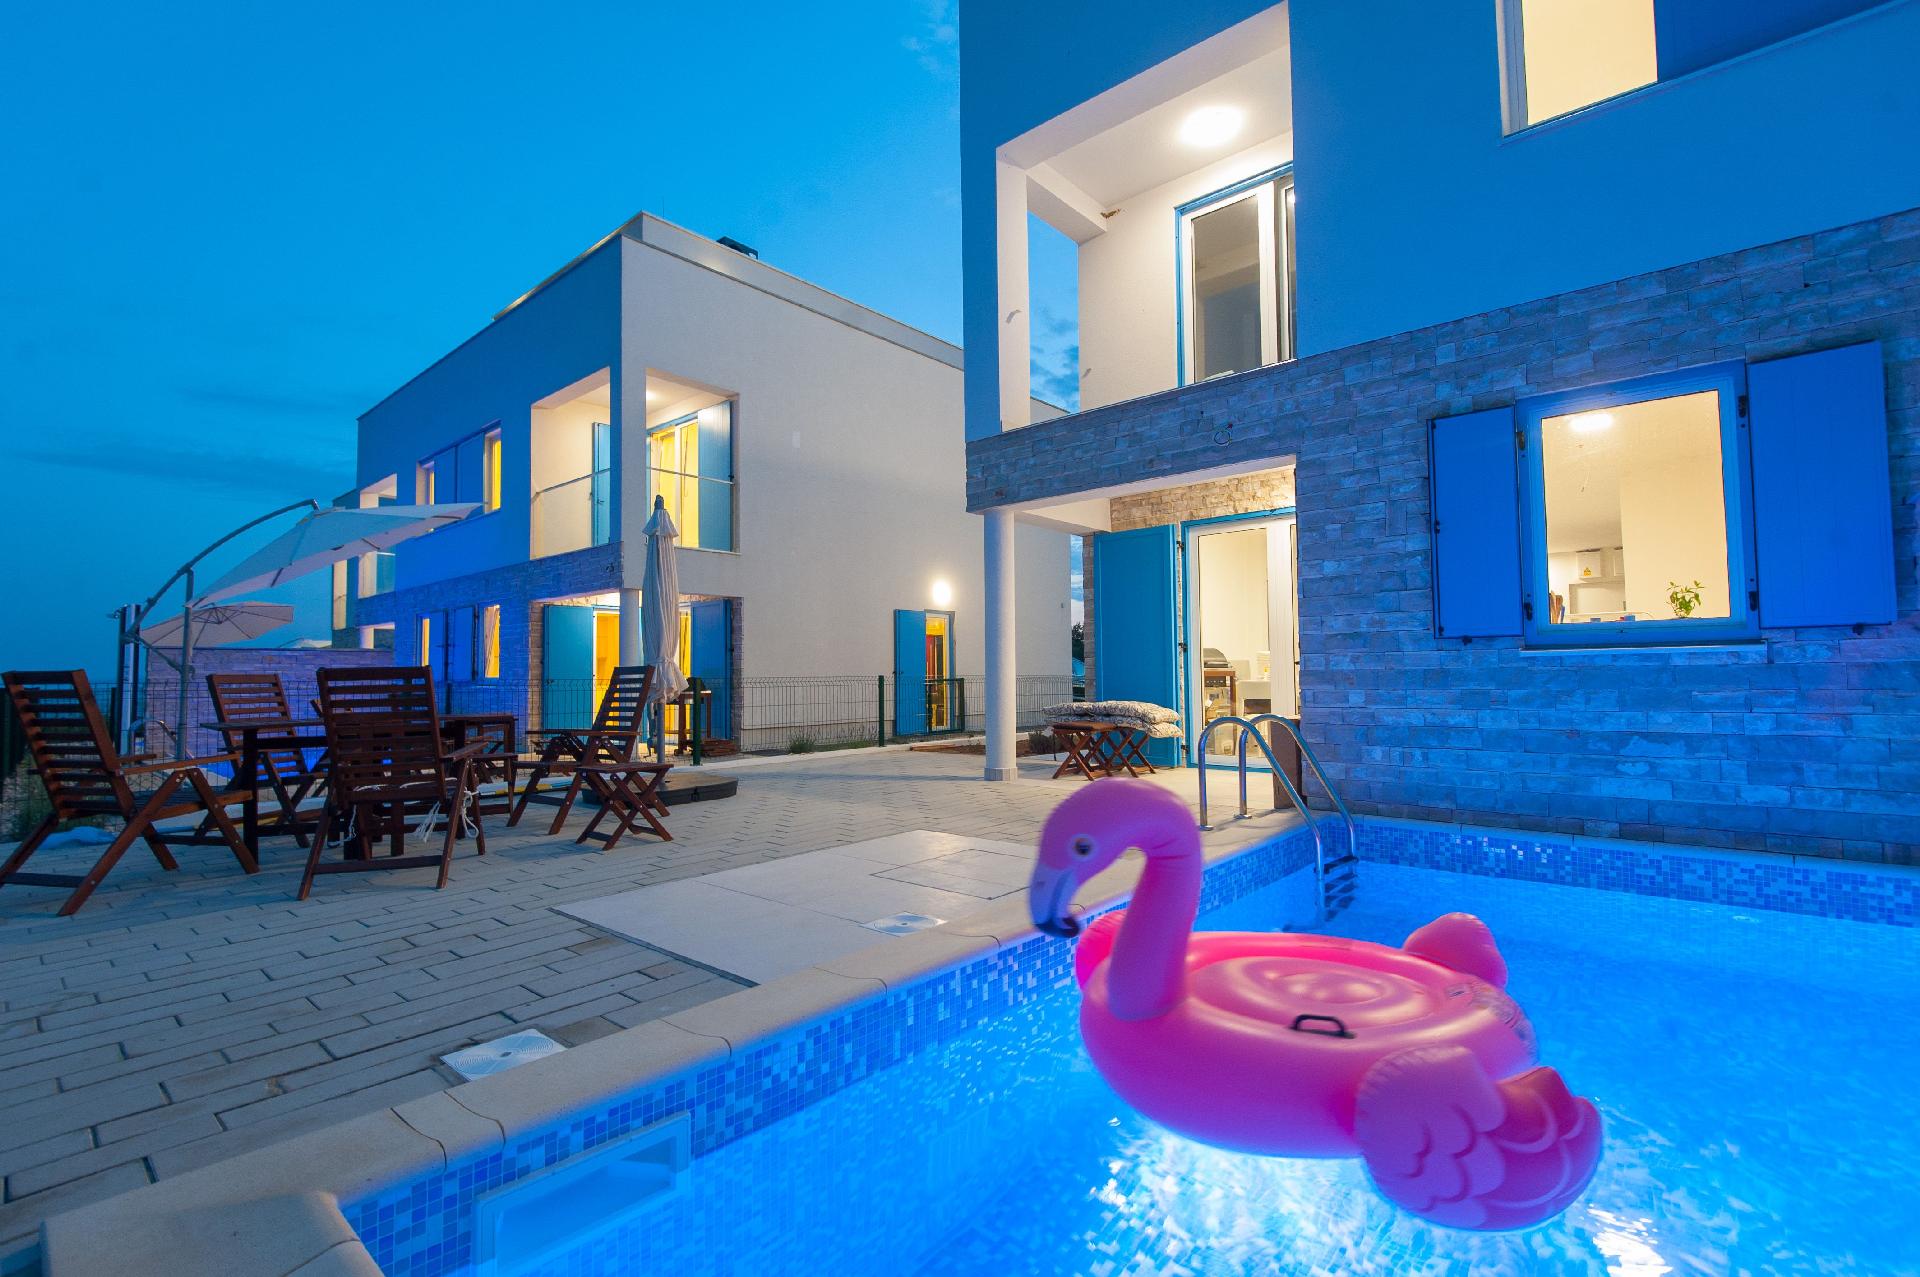 Strandvilla mit beheizbarem Pool und Meerblick, nu Ferienhaus in Kroatien